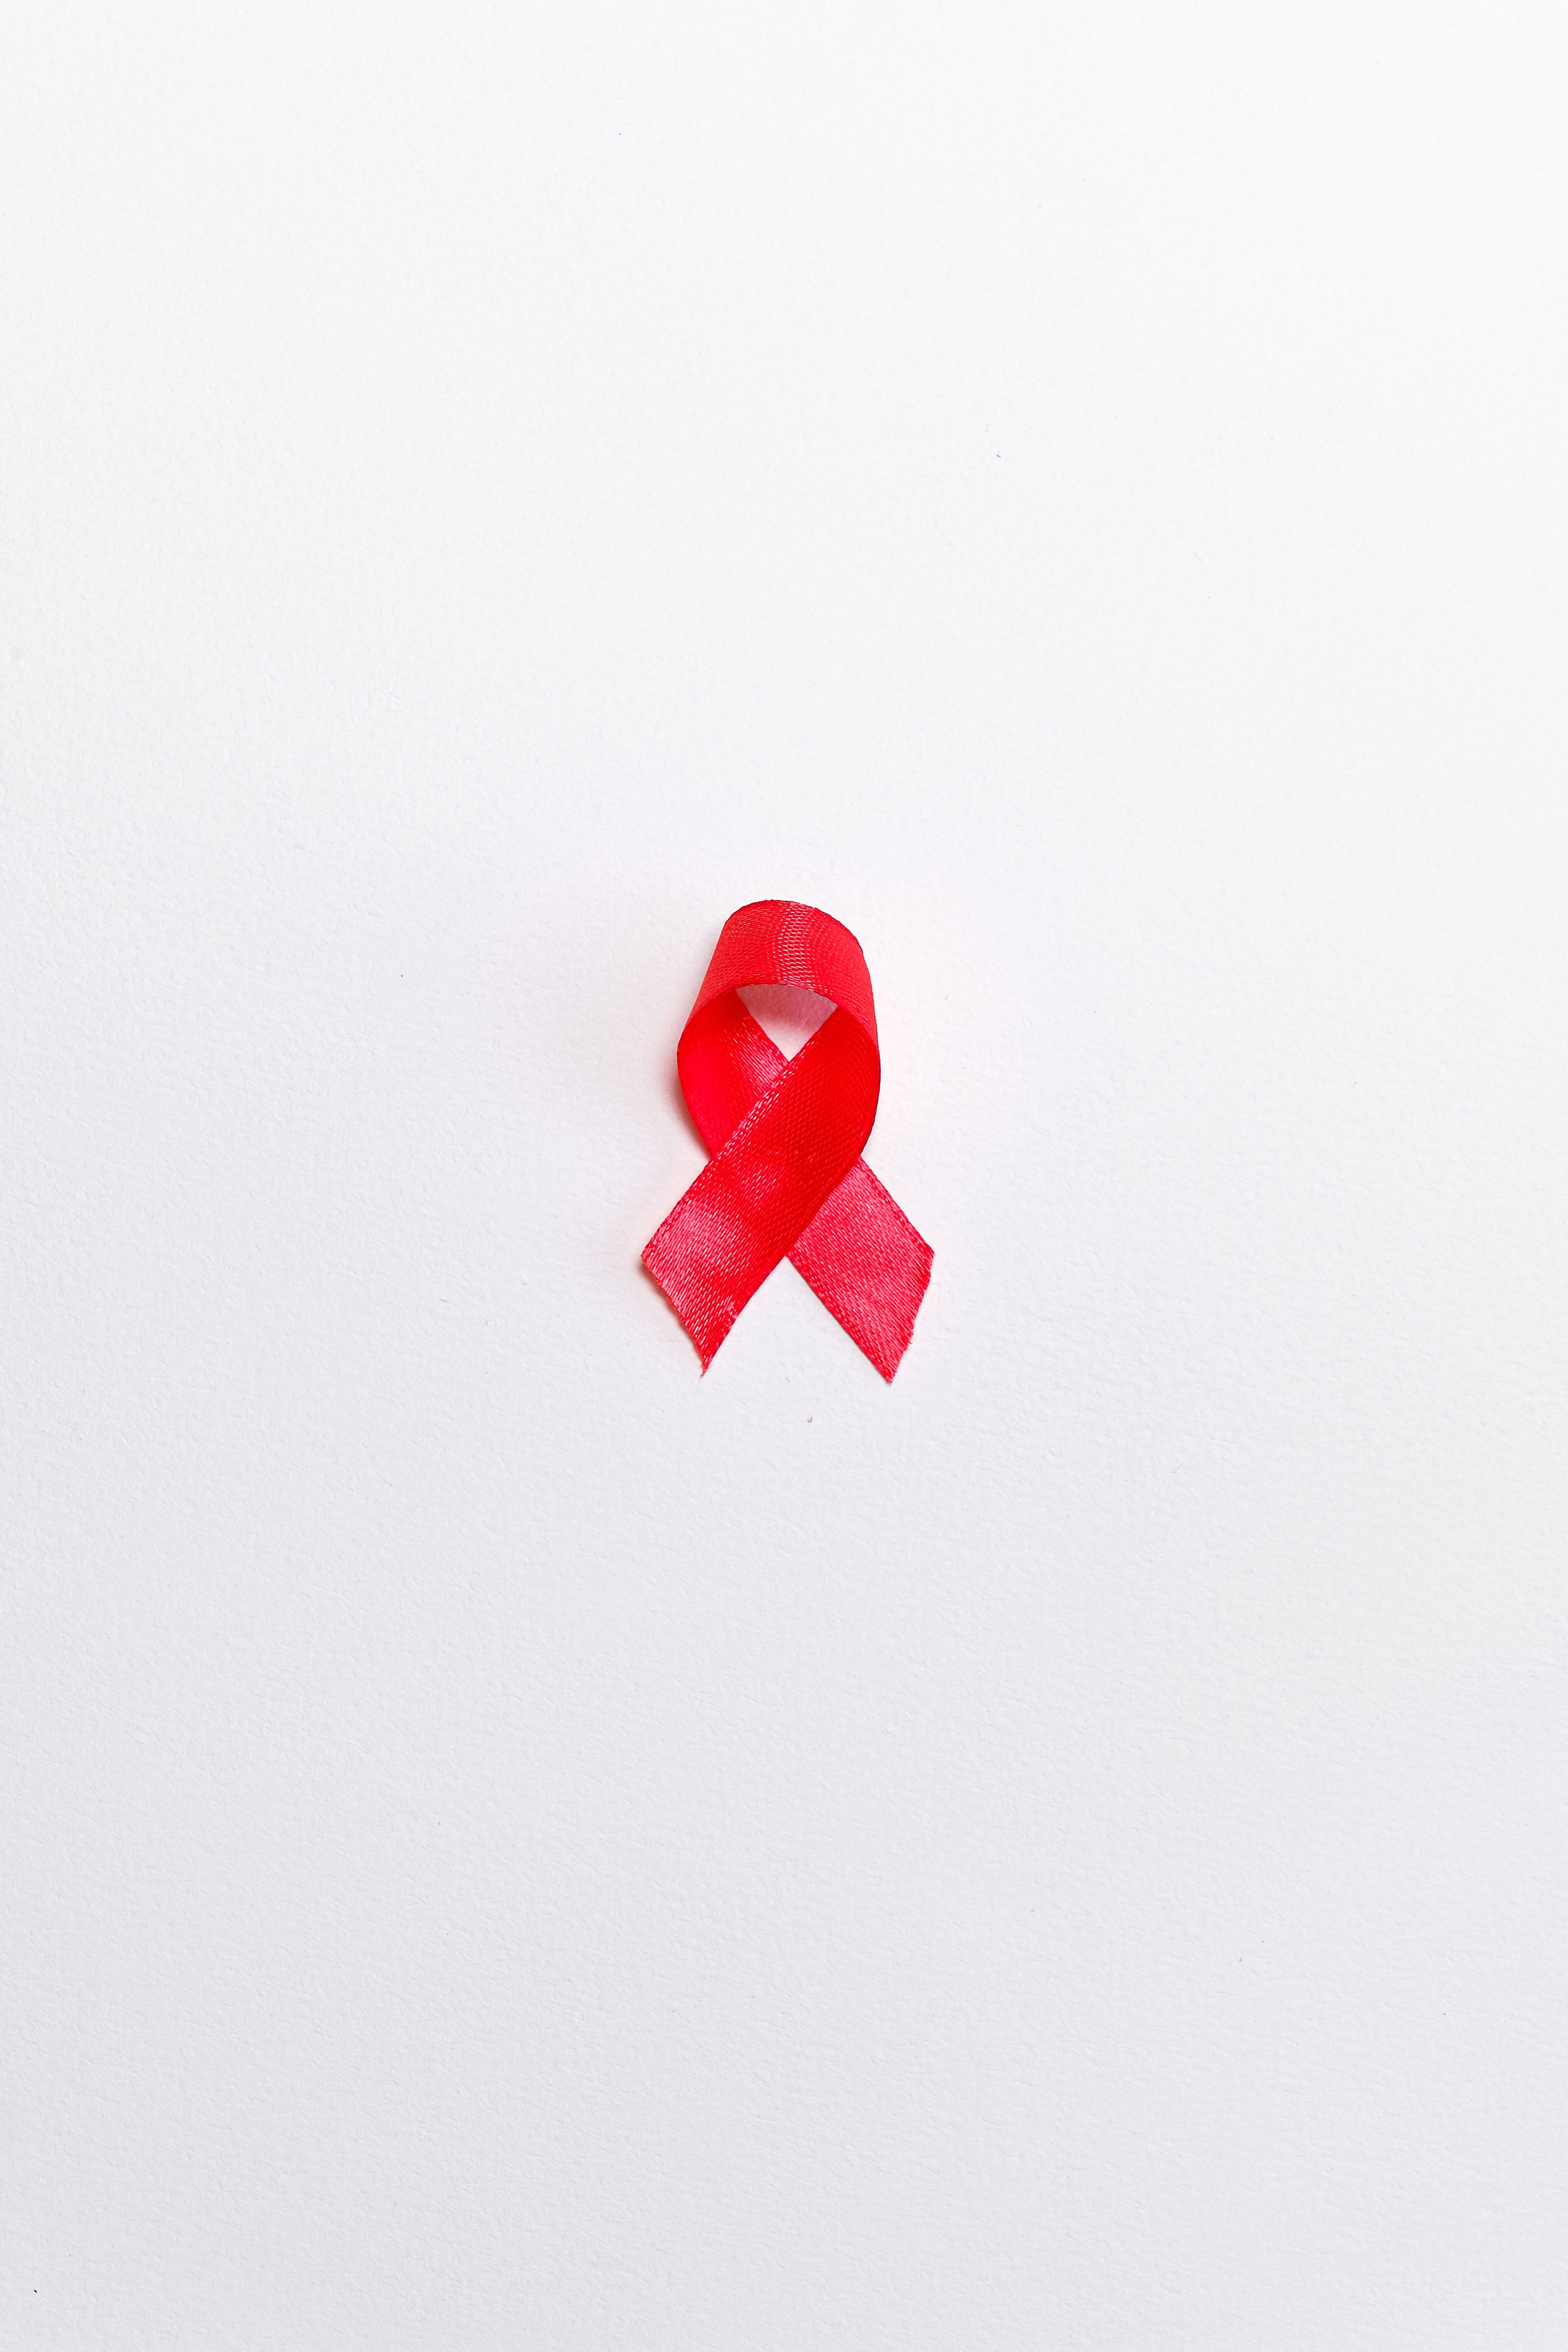 ВИЧ - что это такое, как можно заразиться? Когда делать тестирование на ВИЧ?